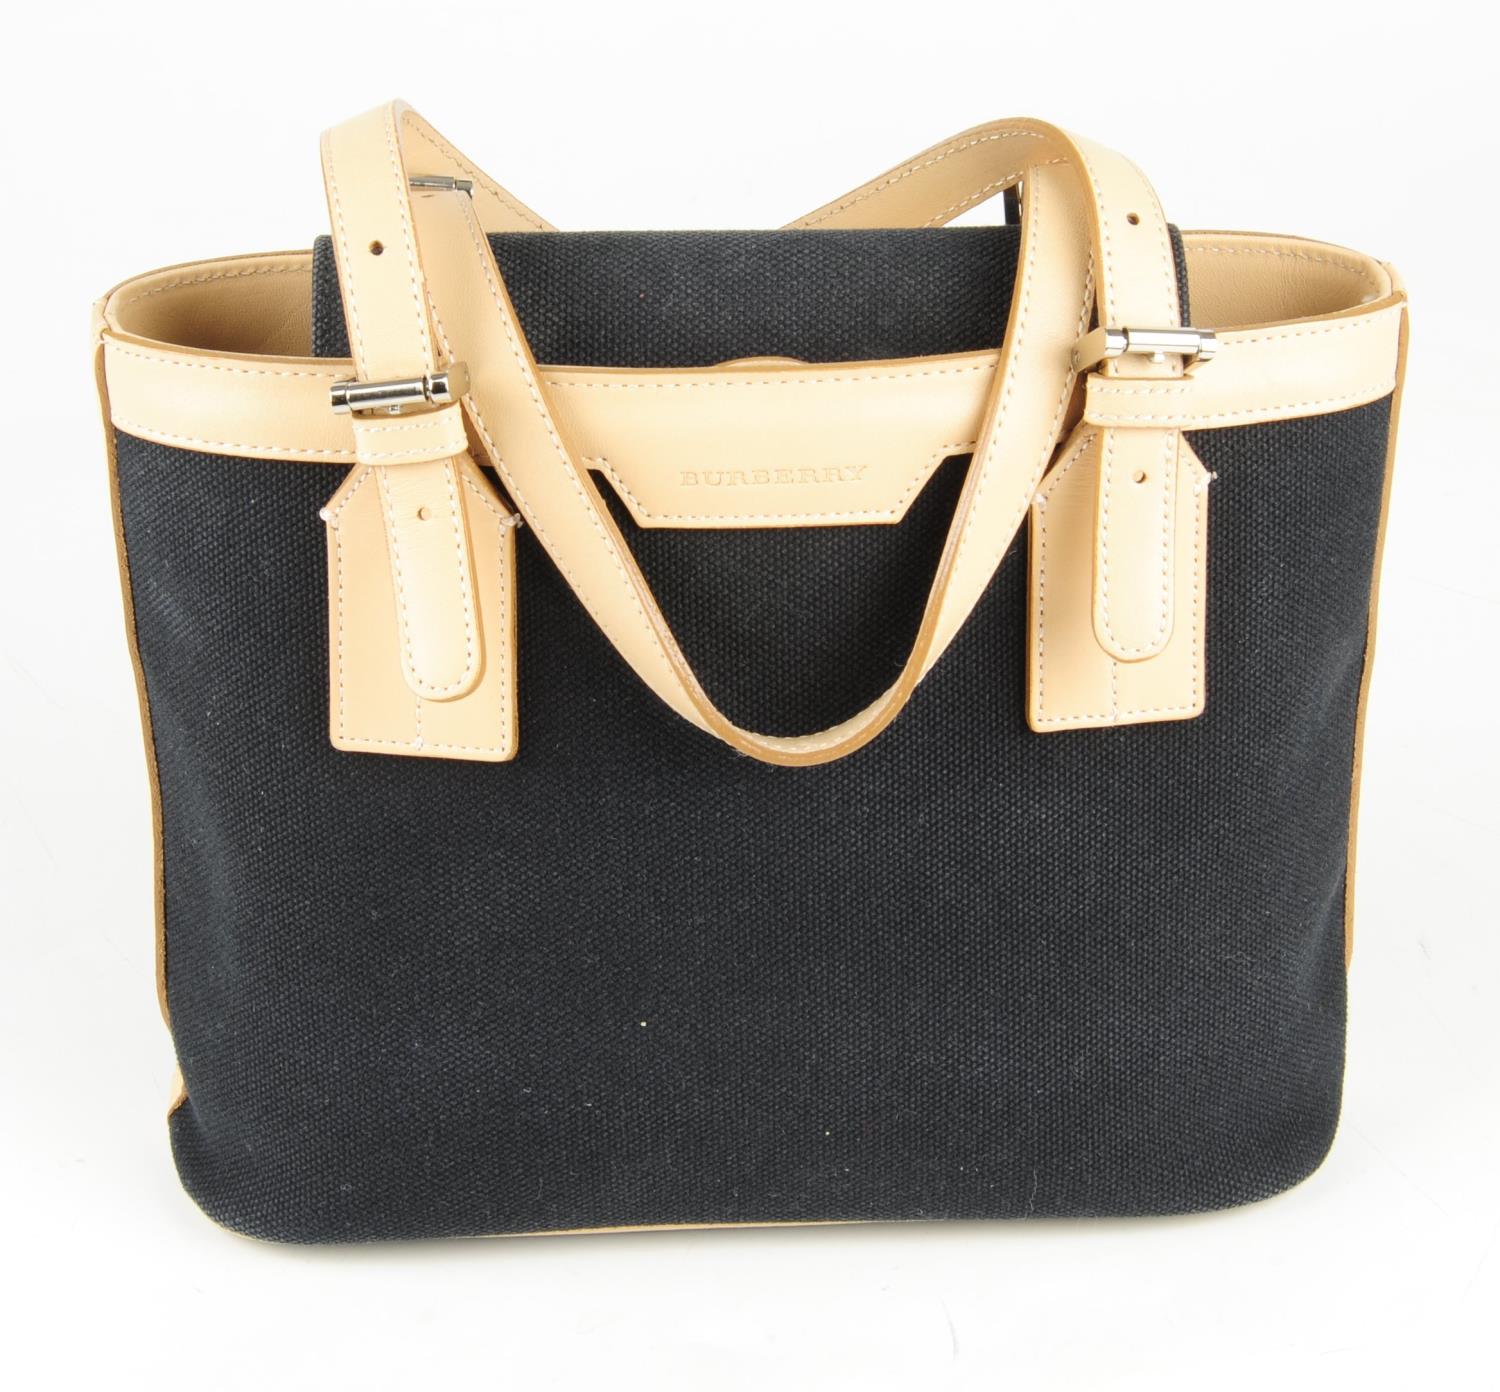 BURBERRY - a small canvas handbag. - Image 5 of 6